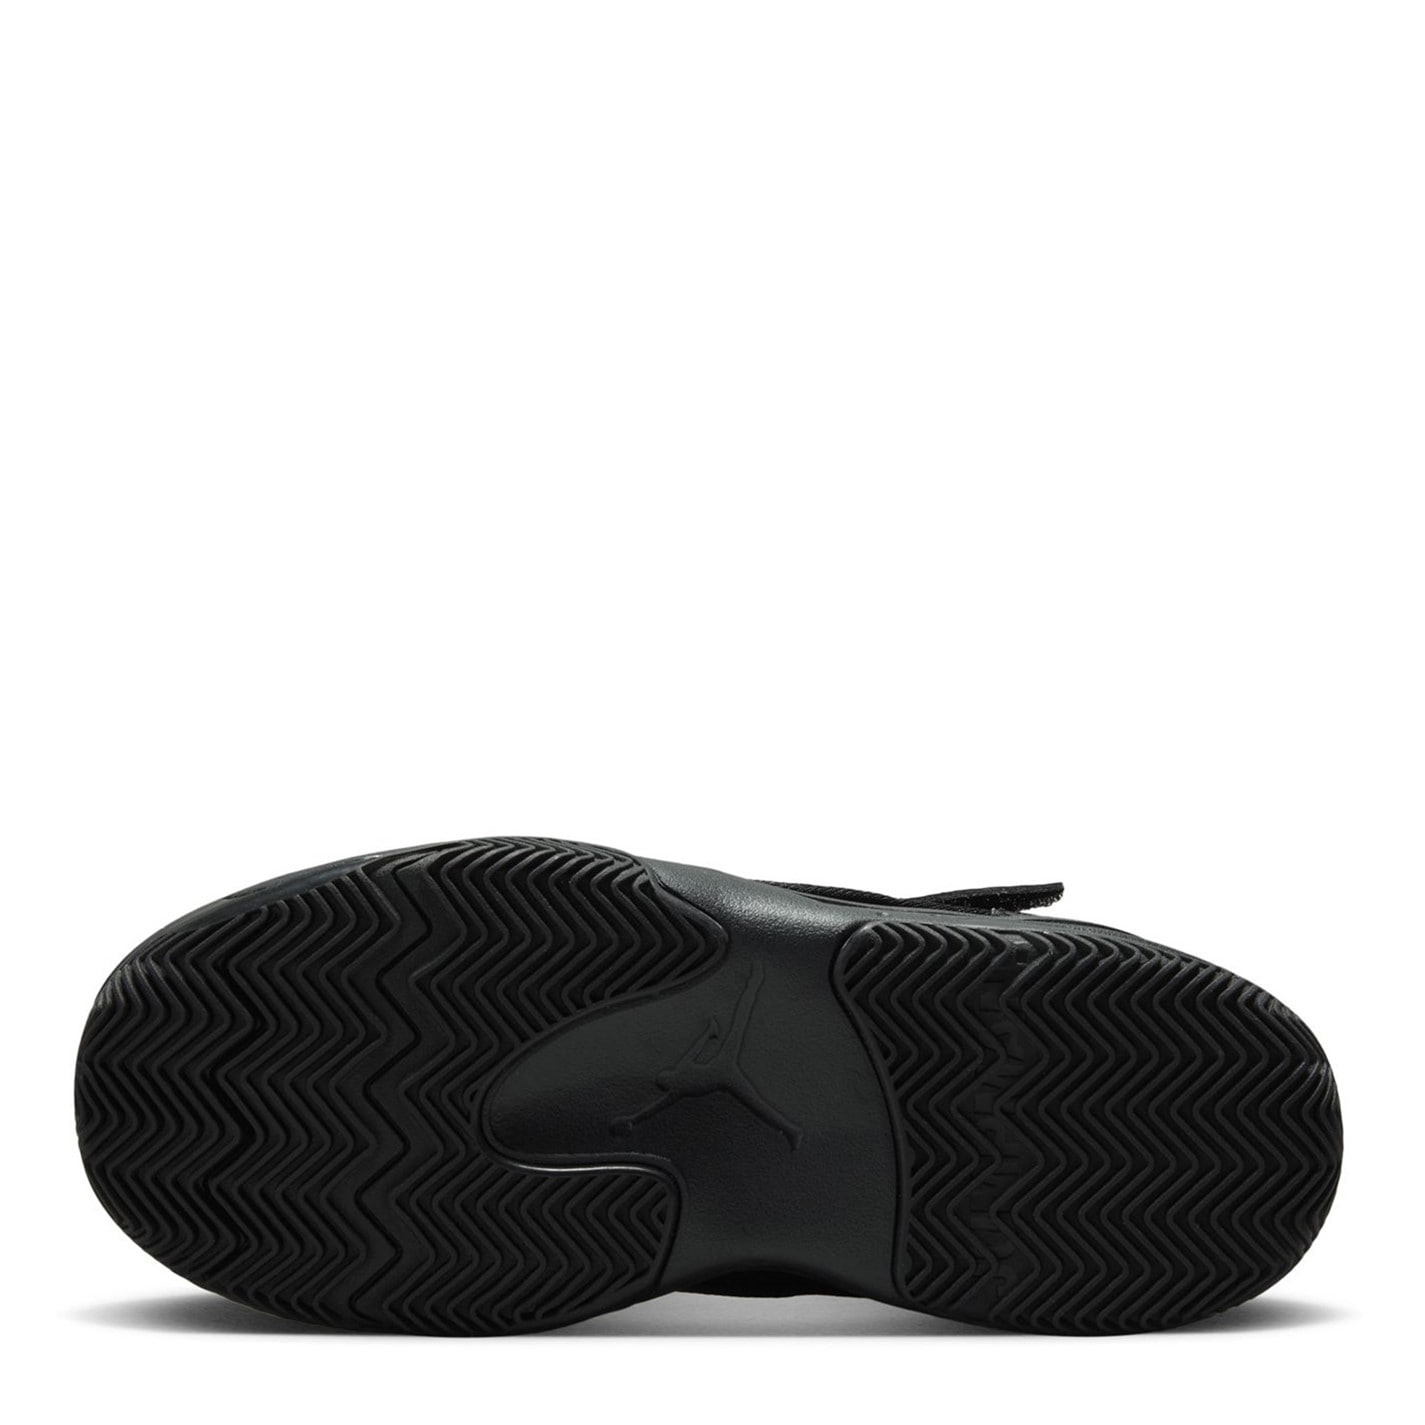 Air Jordan Max Aura 4 Little Shoes pentru Copii negru rosu alb